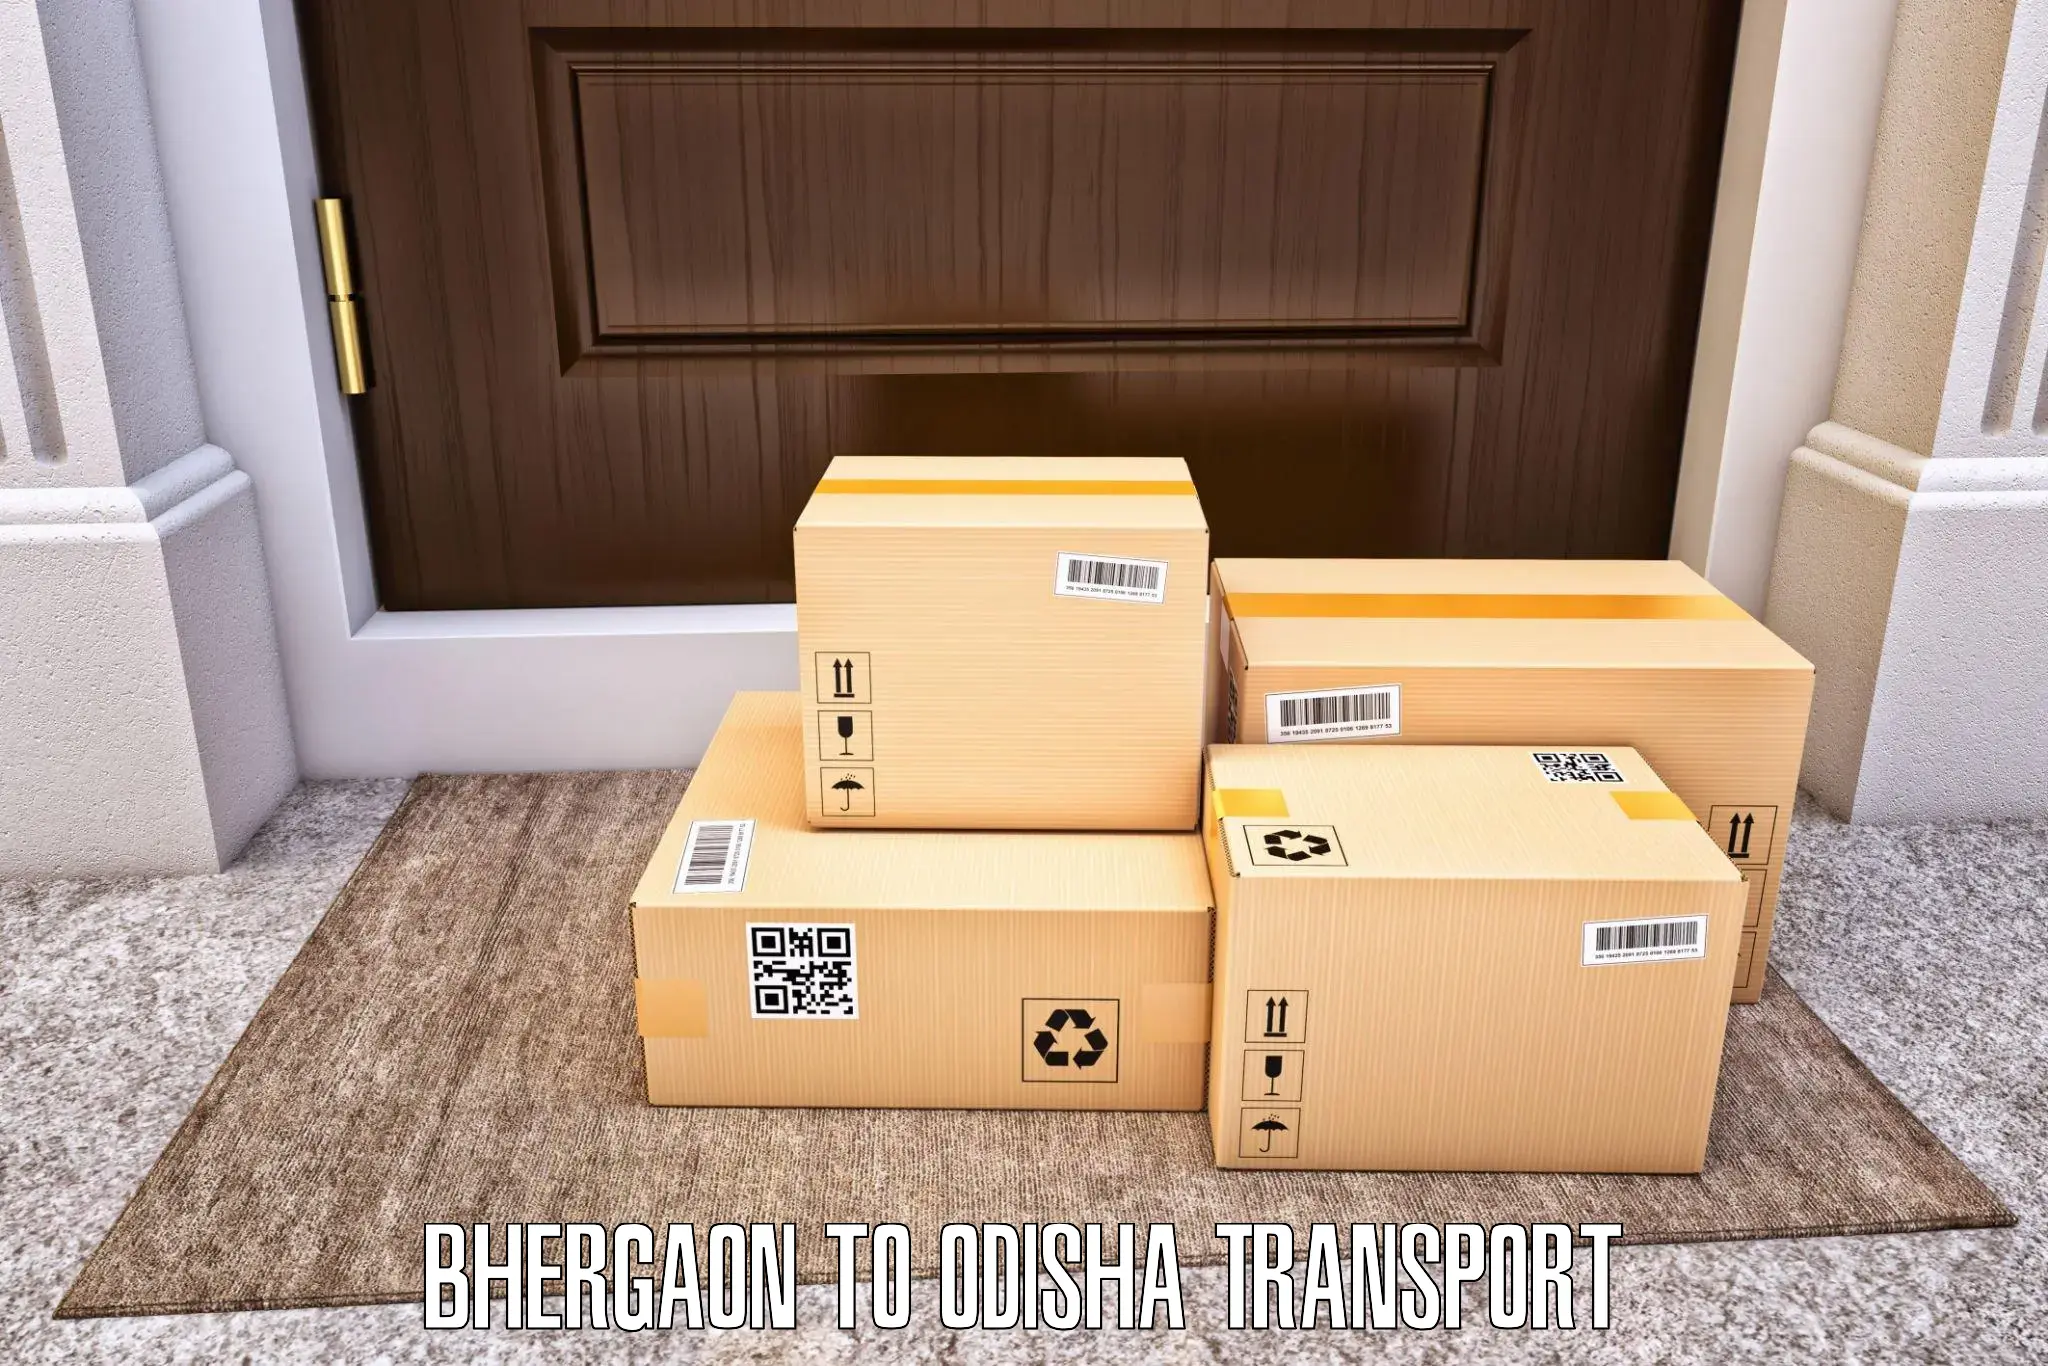 Cargo transportation services Bhergaon to Kodala